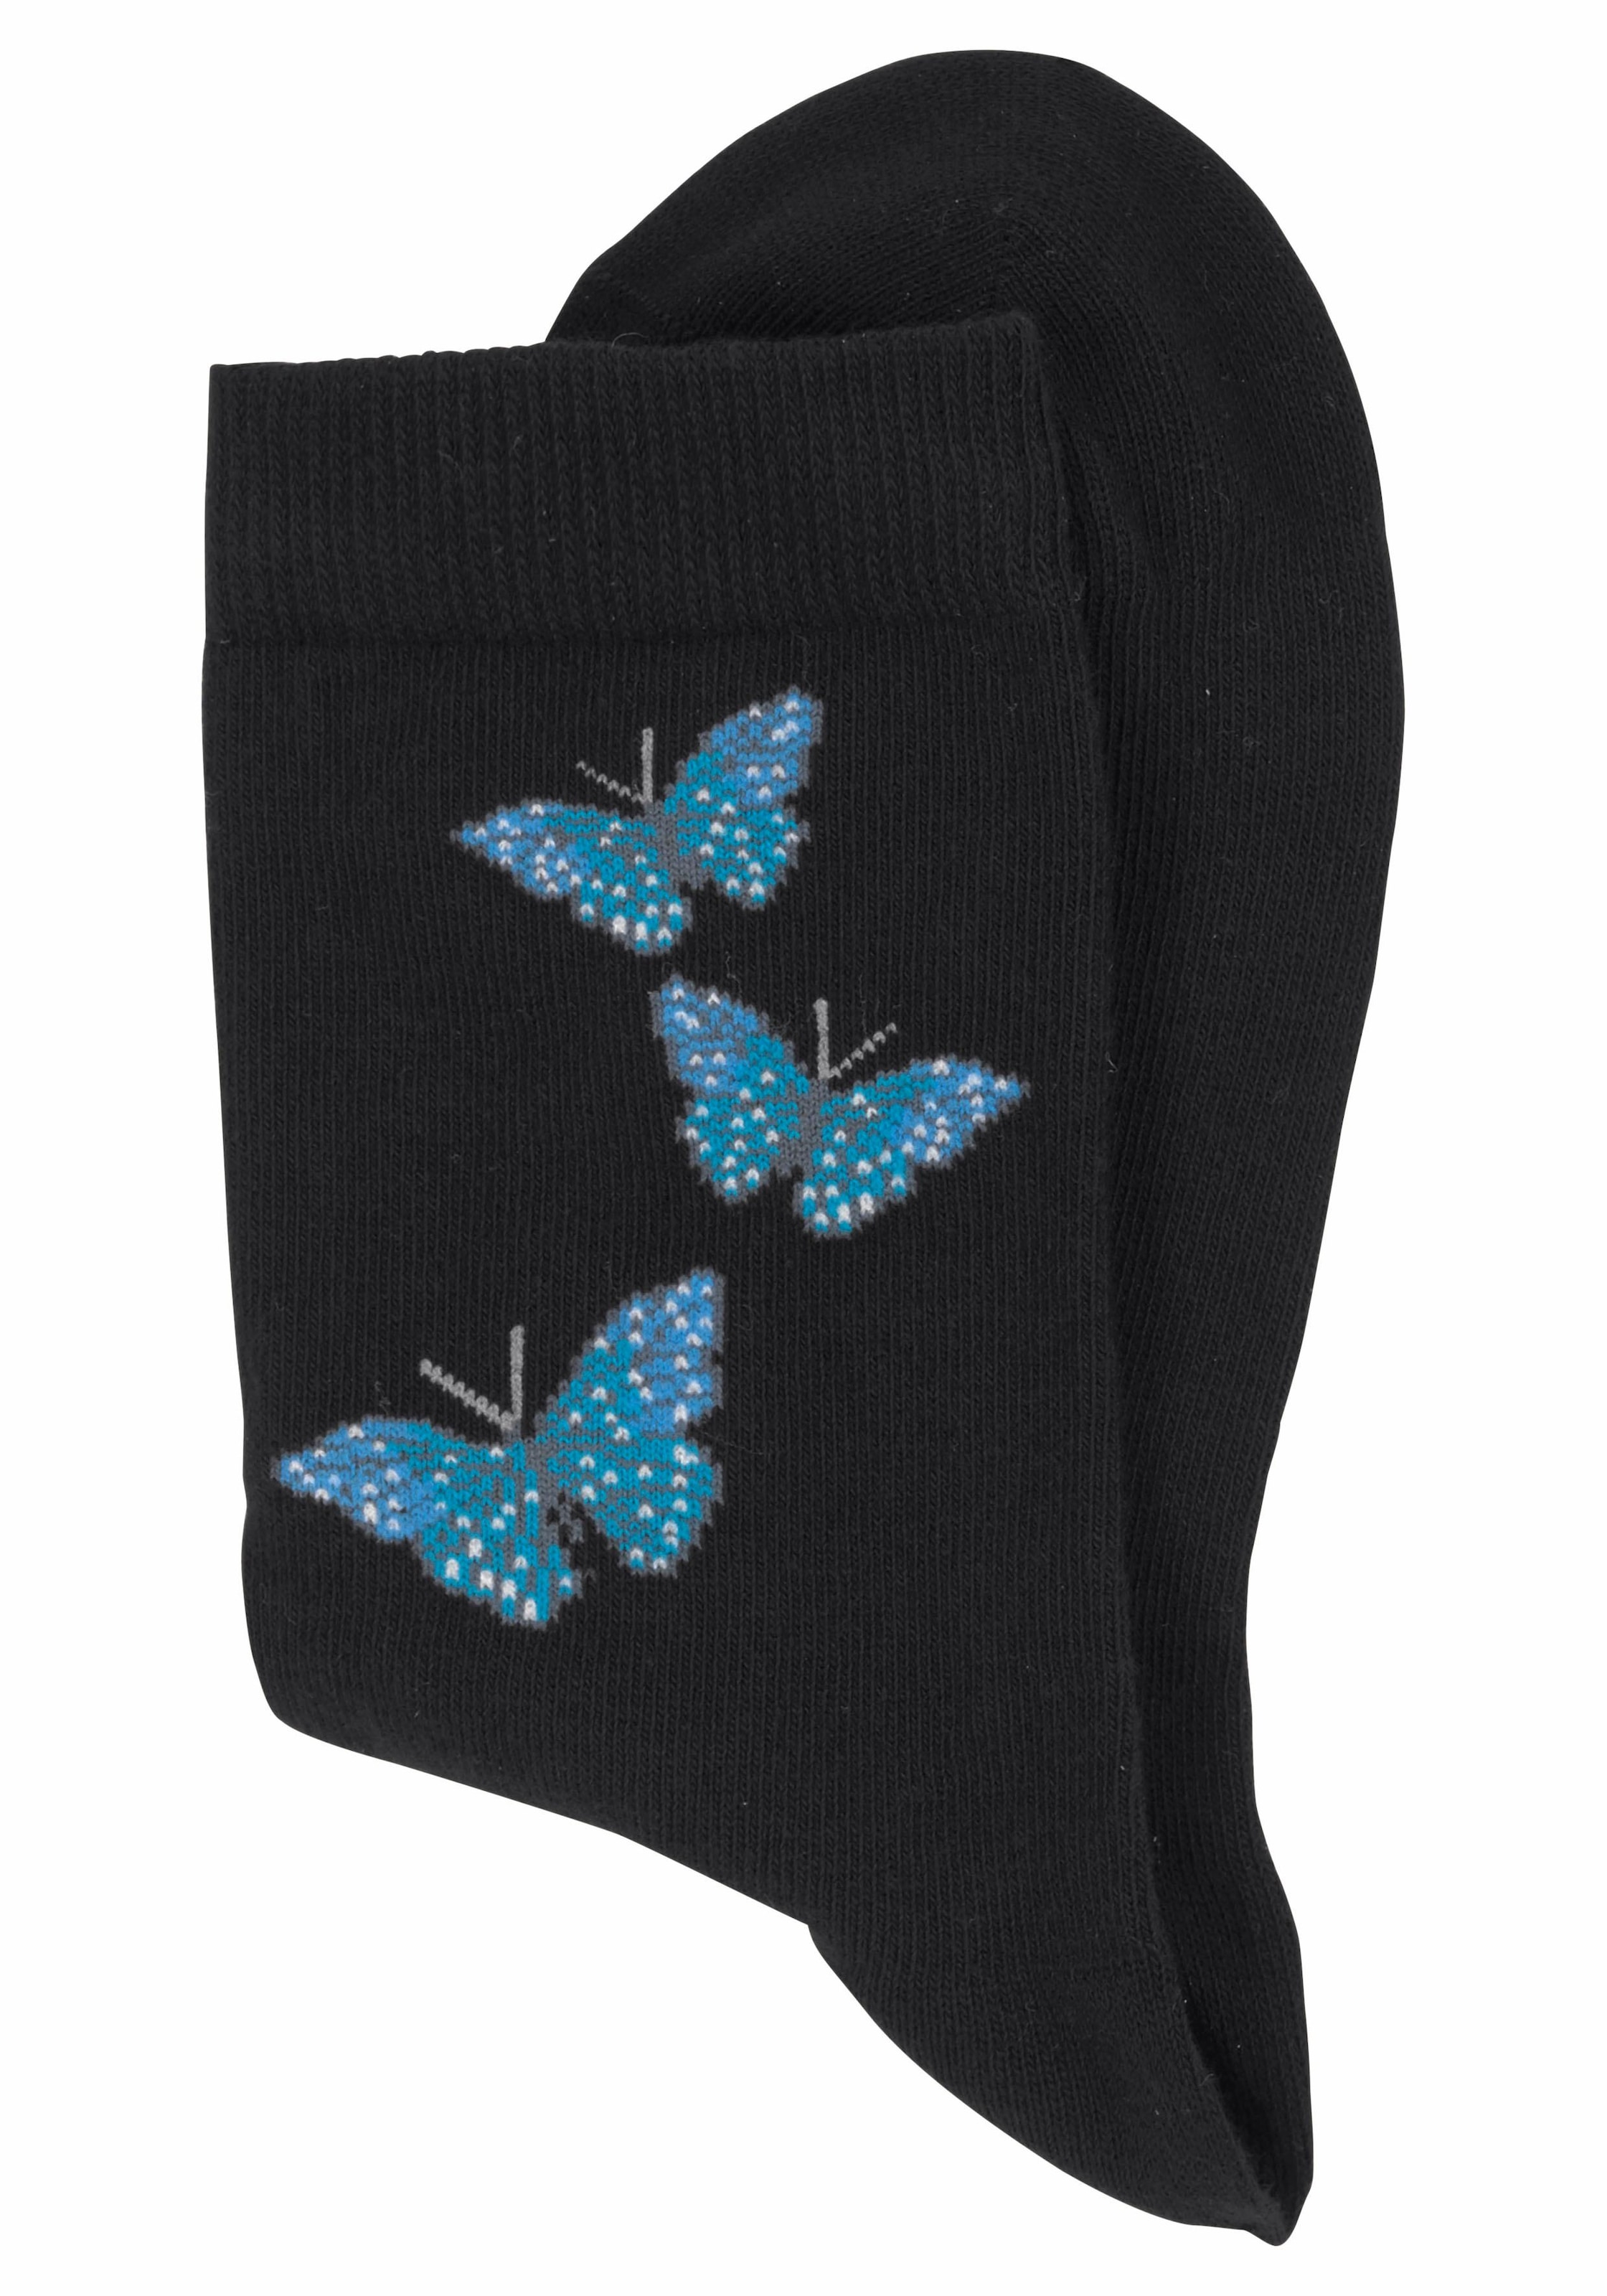 H.I.S Socken, (Packung, 7 Paar), mit Schmetterlings- und Vogelmotiven